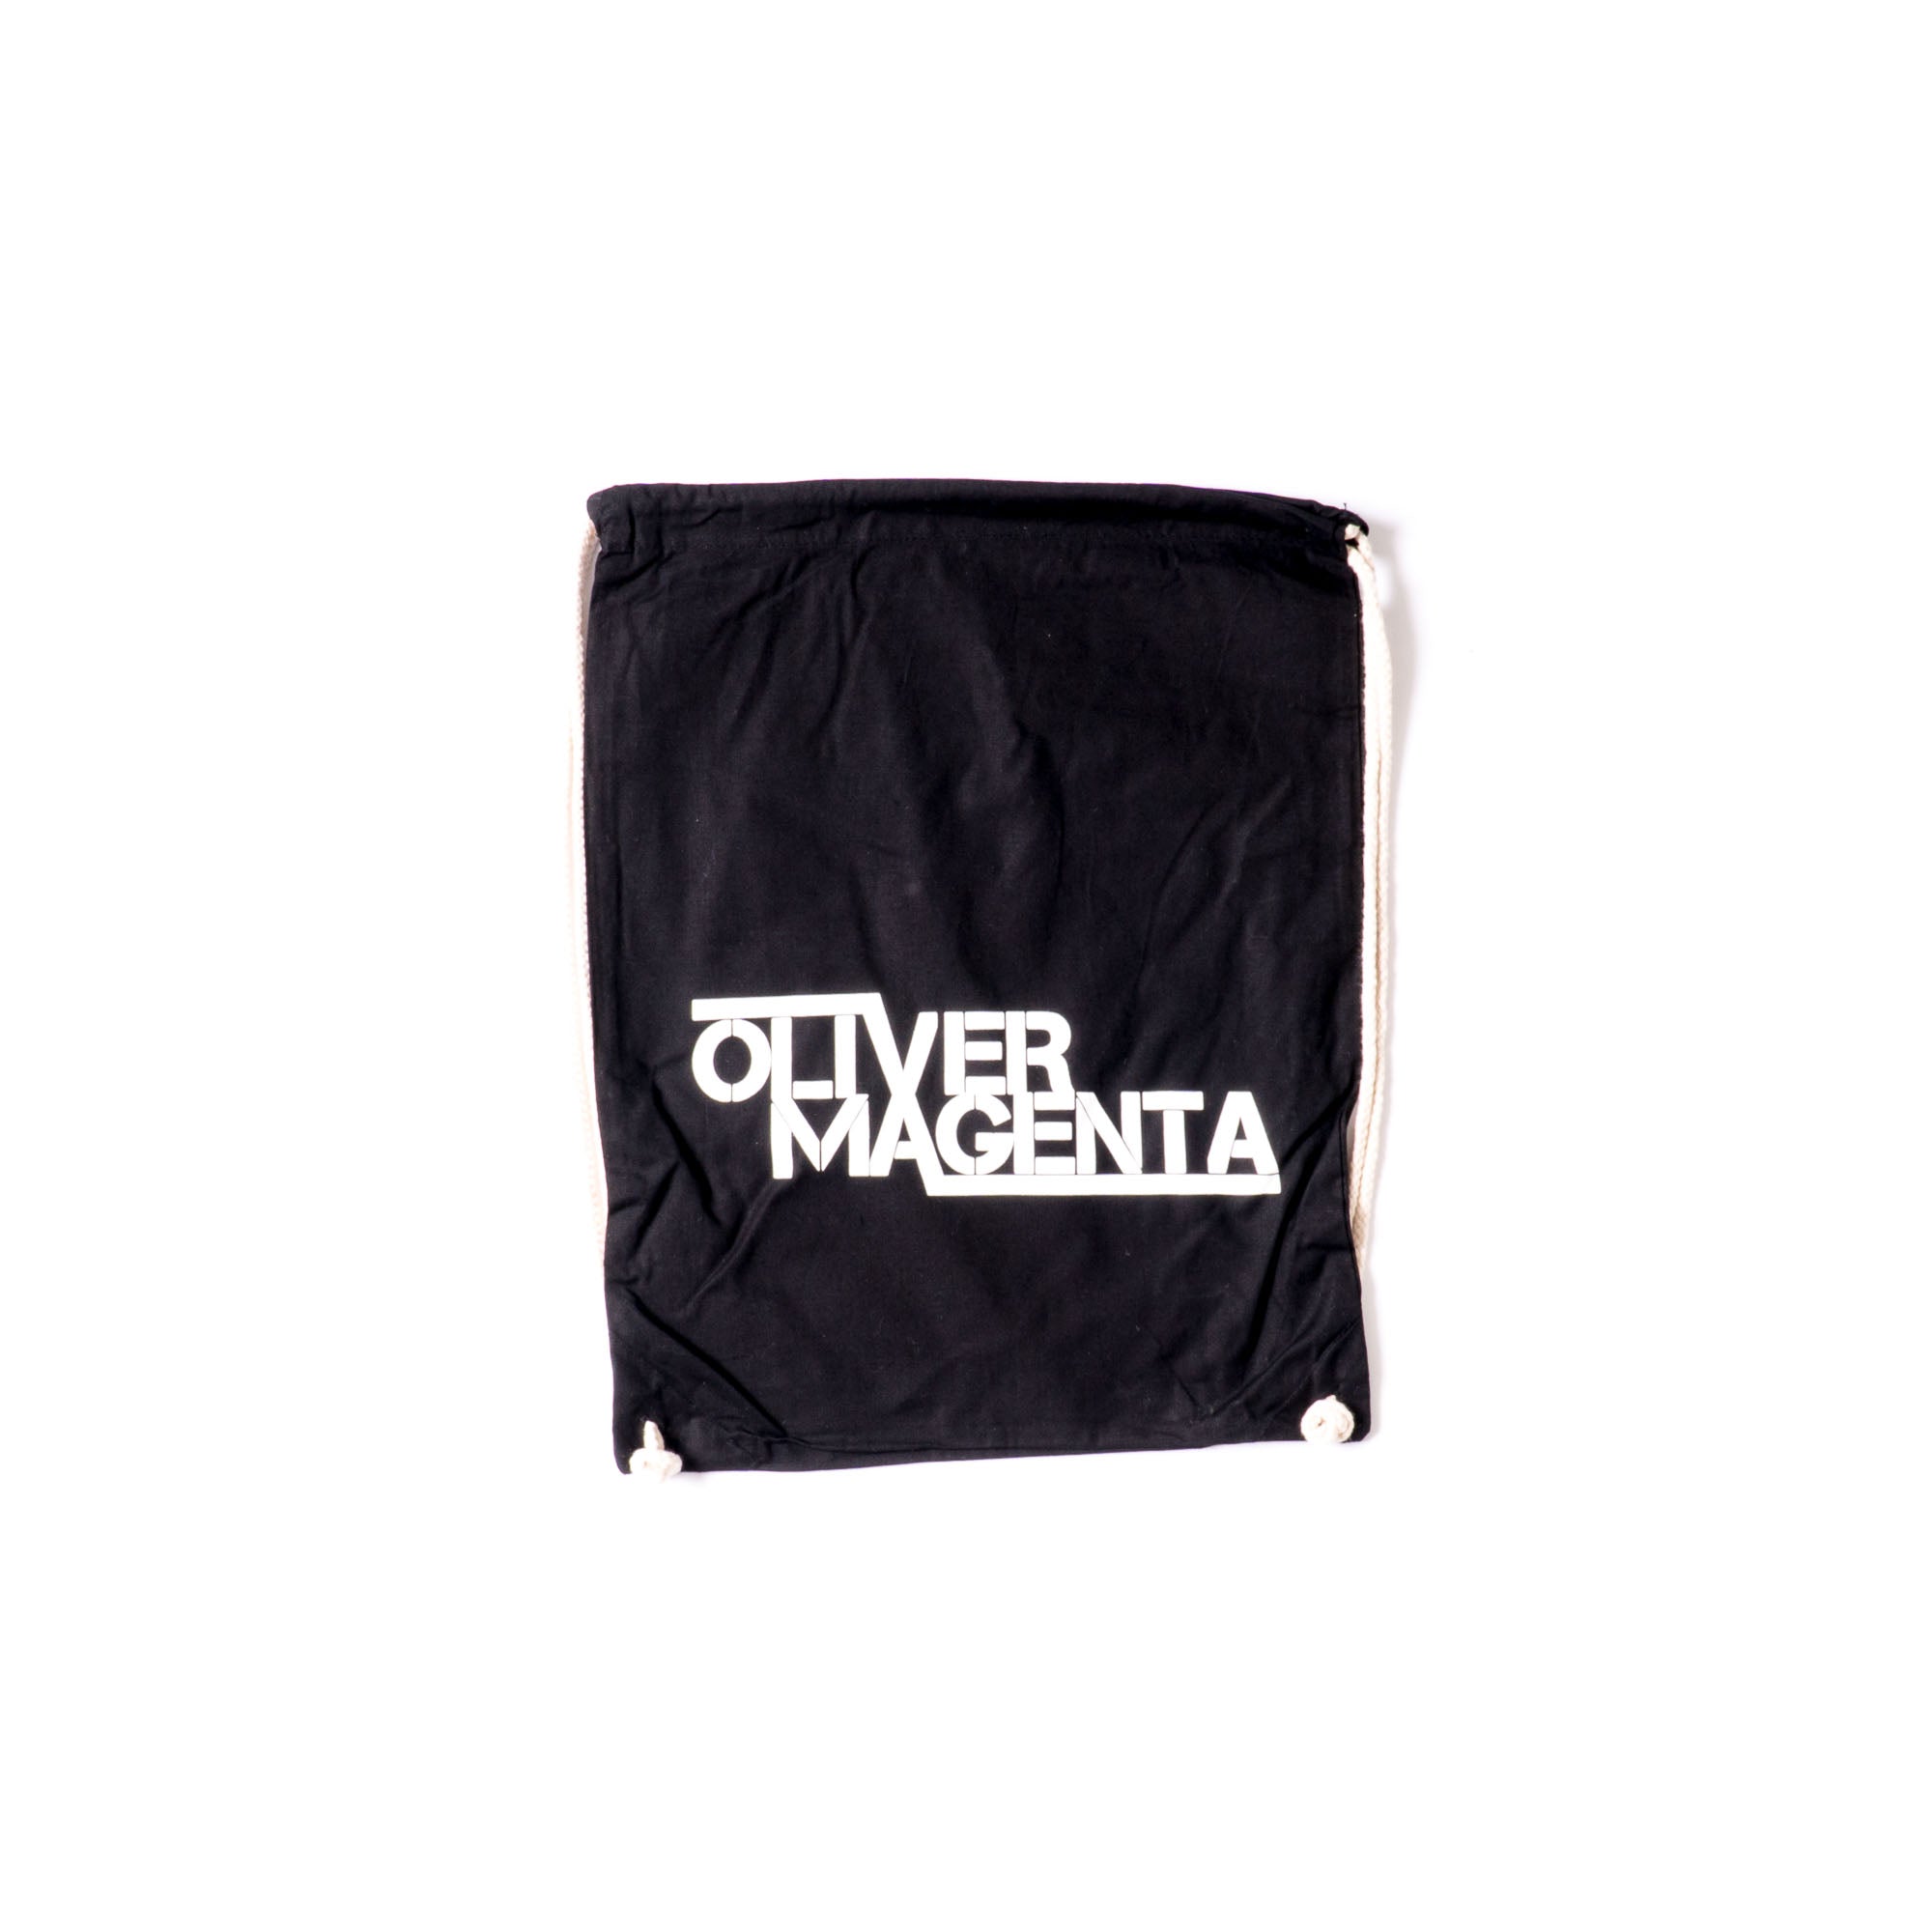 Oliver Magenta - Basic Gymbag